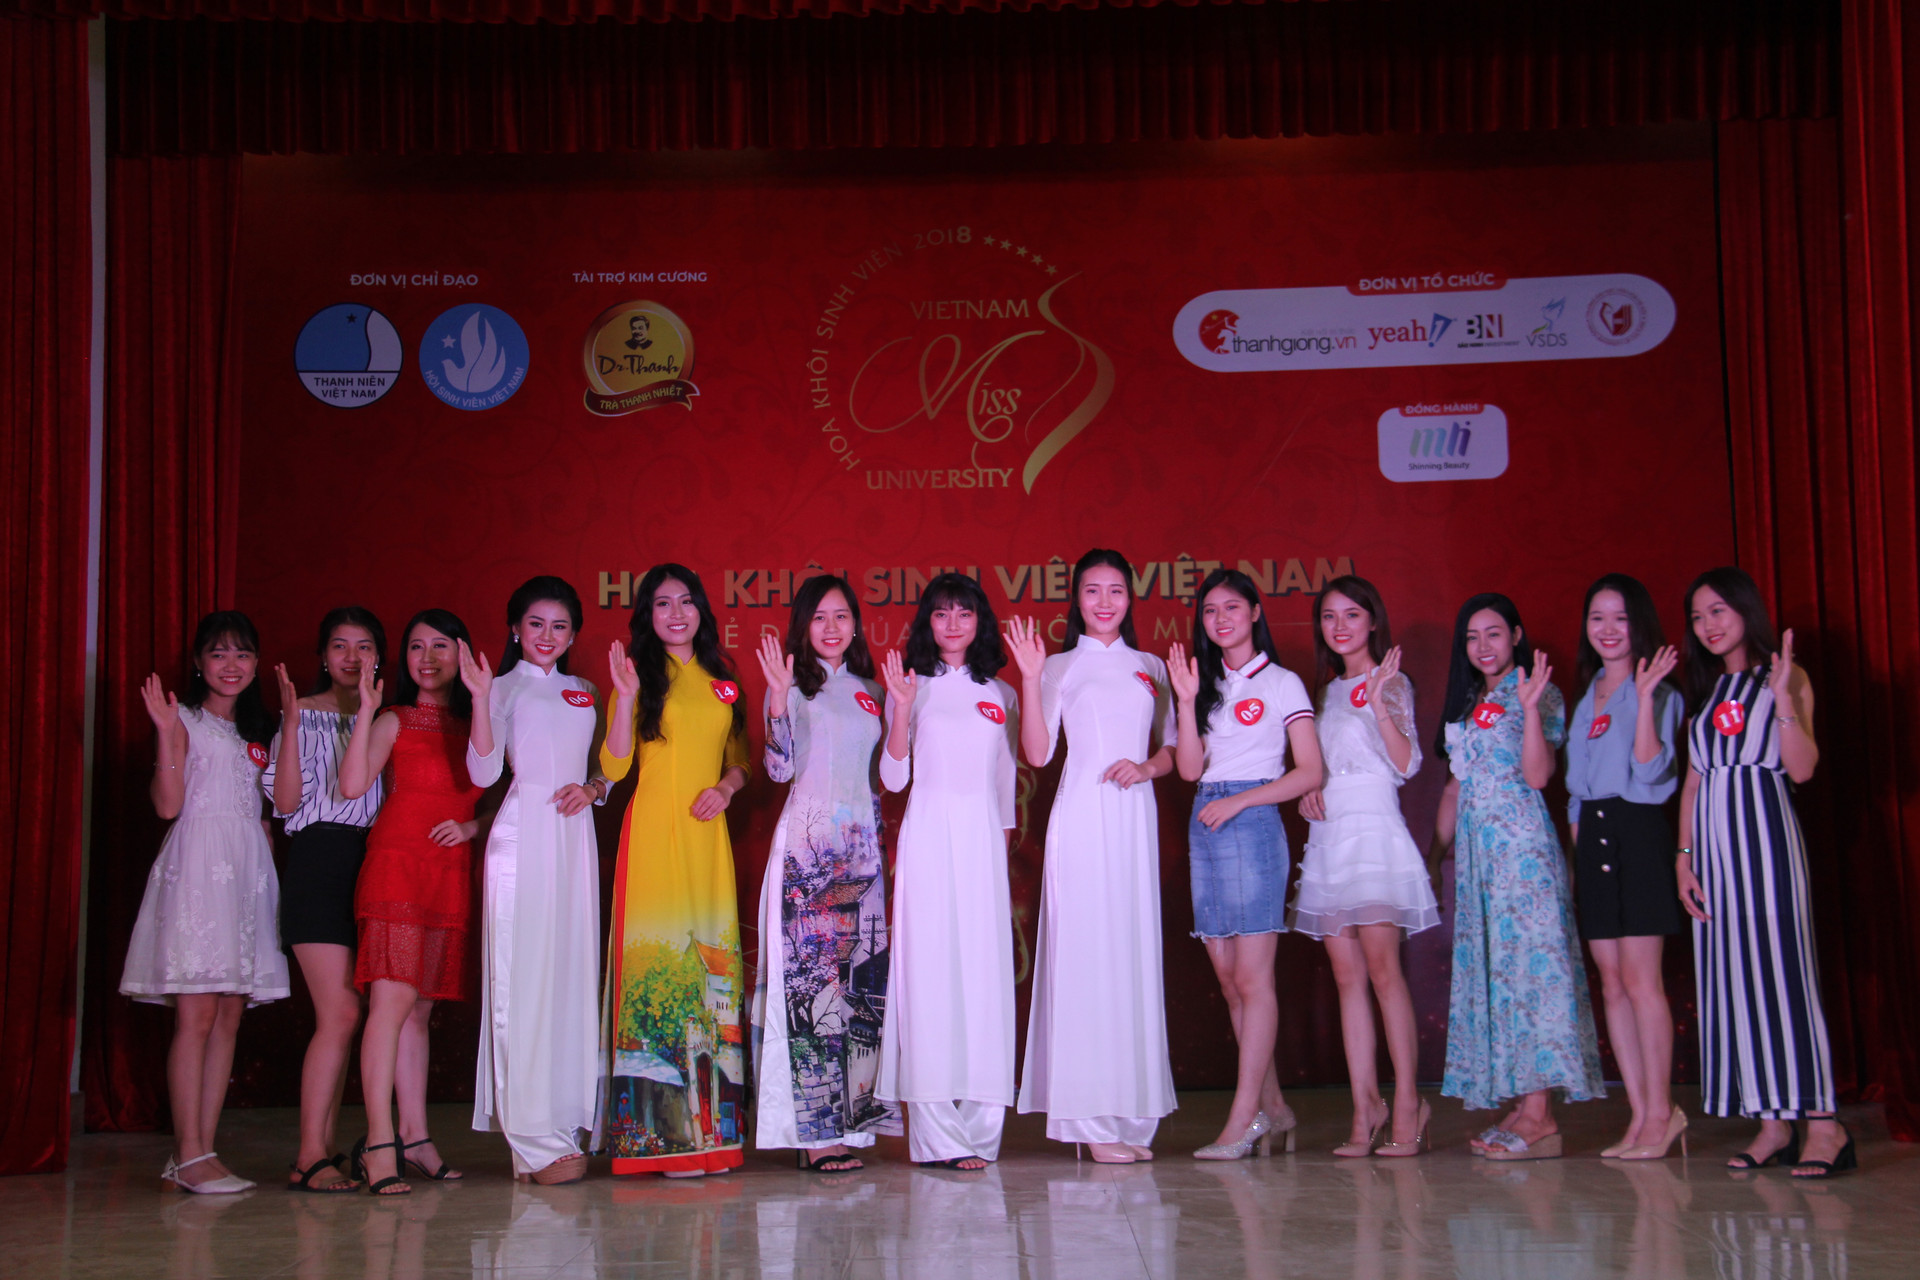 Ngắm 5 thí sinh đầu tiên lọt vào vòng Bán kết cuộc thi Hoa khôi sinh viên Việt Nam năm 2018